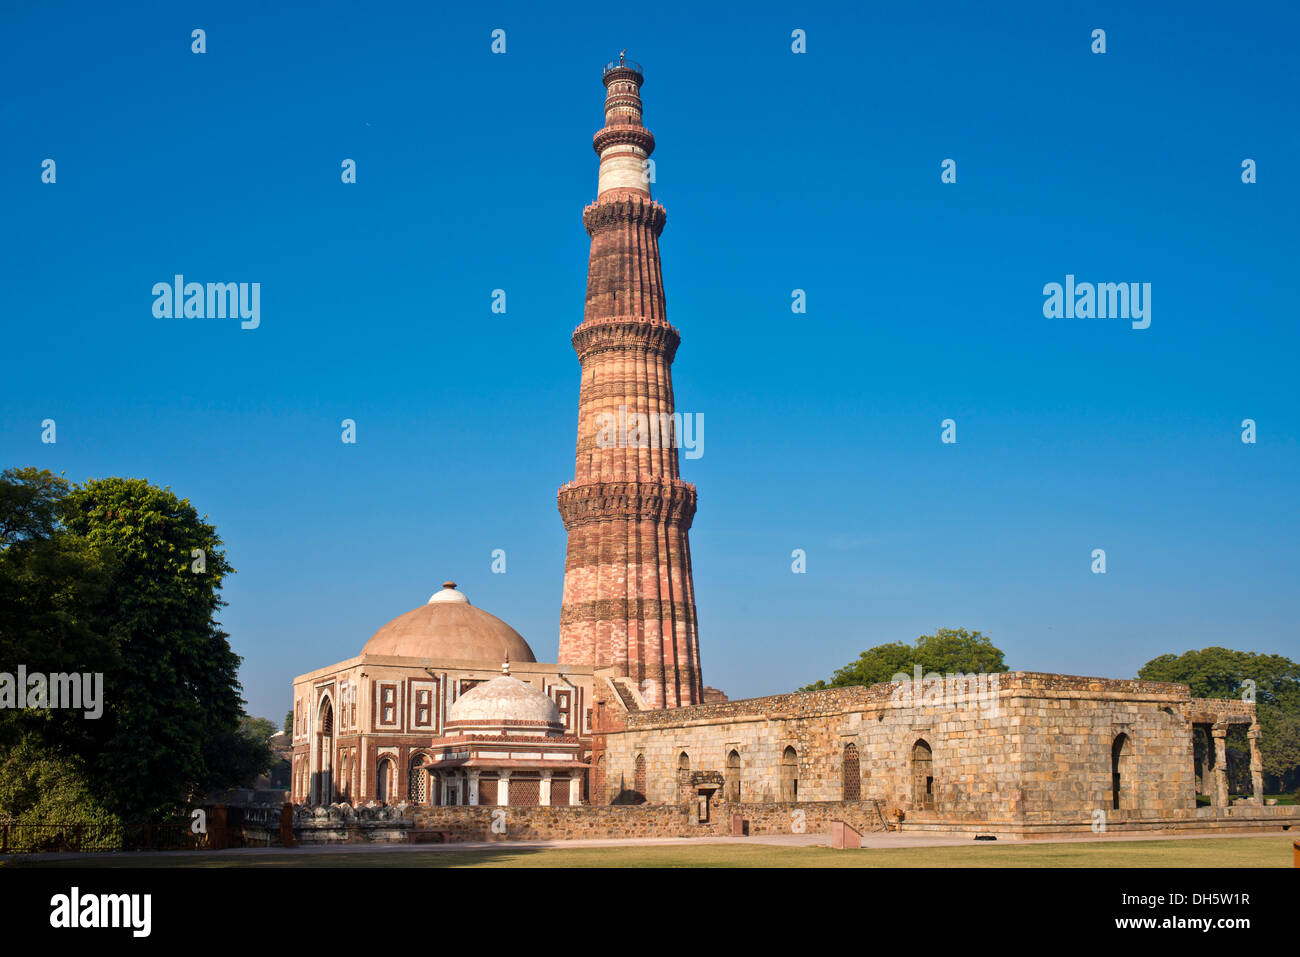 Colonne de la victoire et de Qutb Minar minaret de la règle islamique Qutb-ud-din Aibak et la Quwwat-ul-Islam mosquée Masjid, l'Unesco Banque D'Images